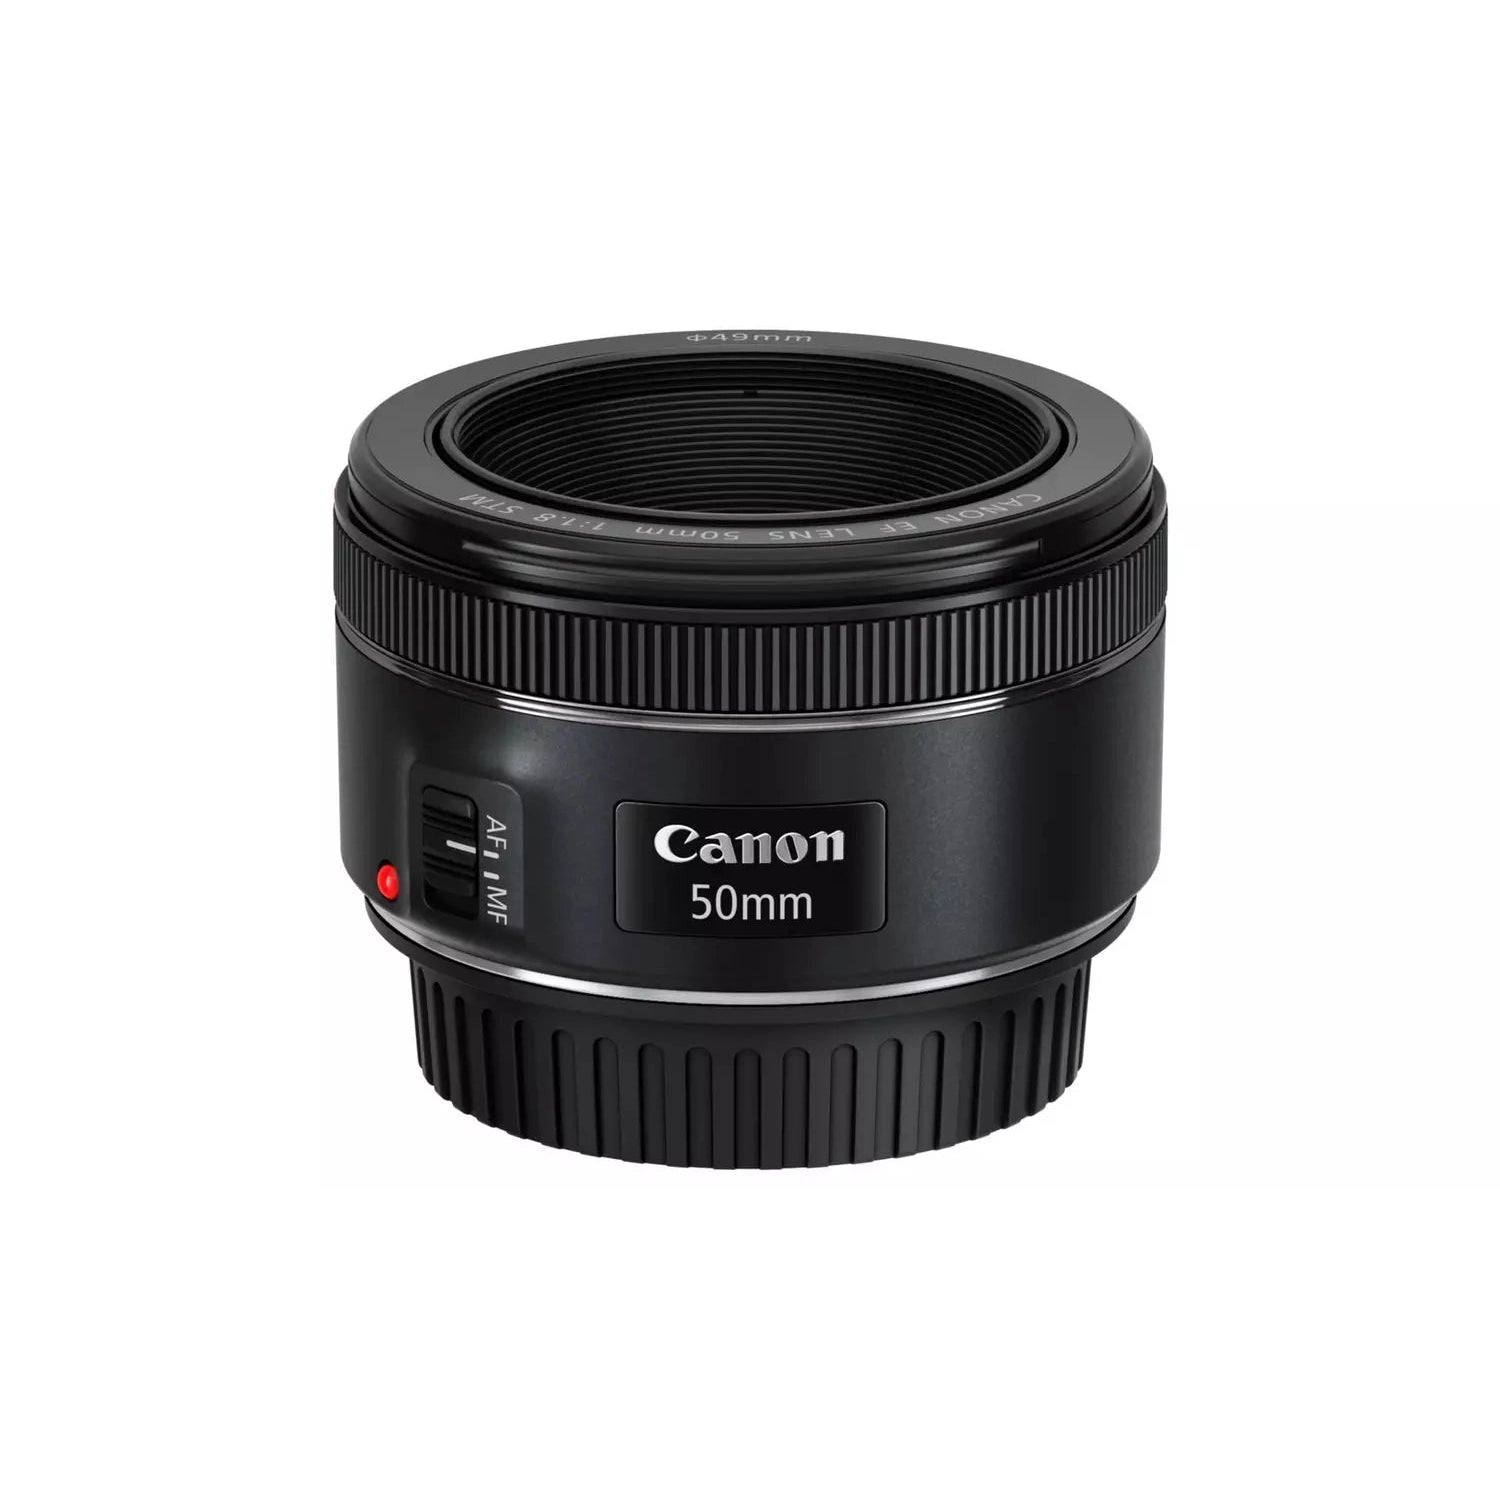 Canon 50mm 0.35m/1.1FT Lens - Black